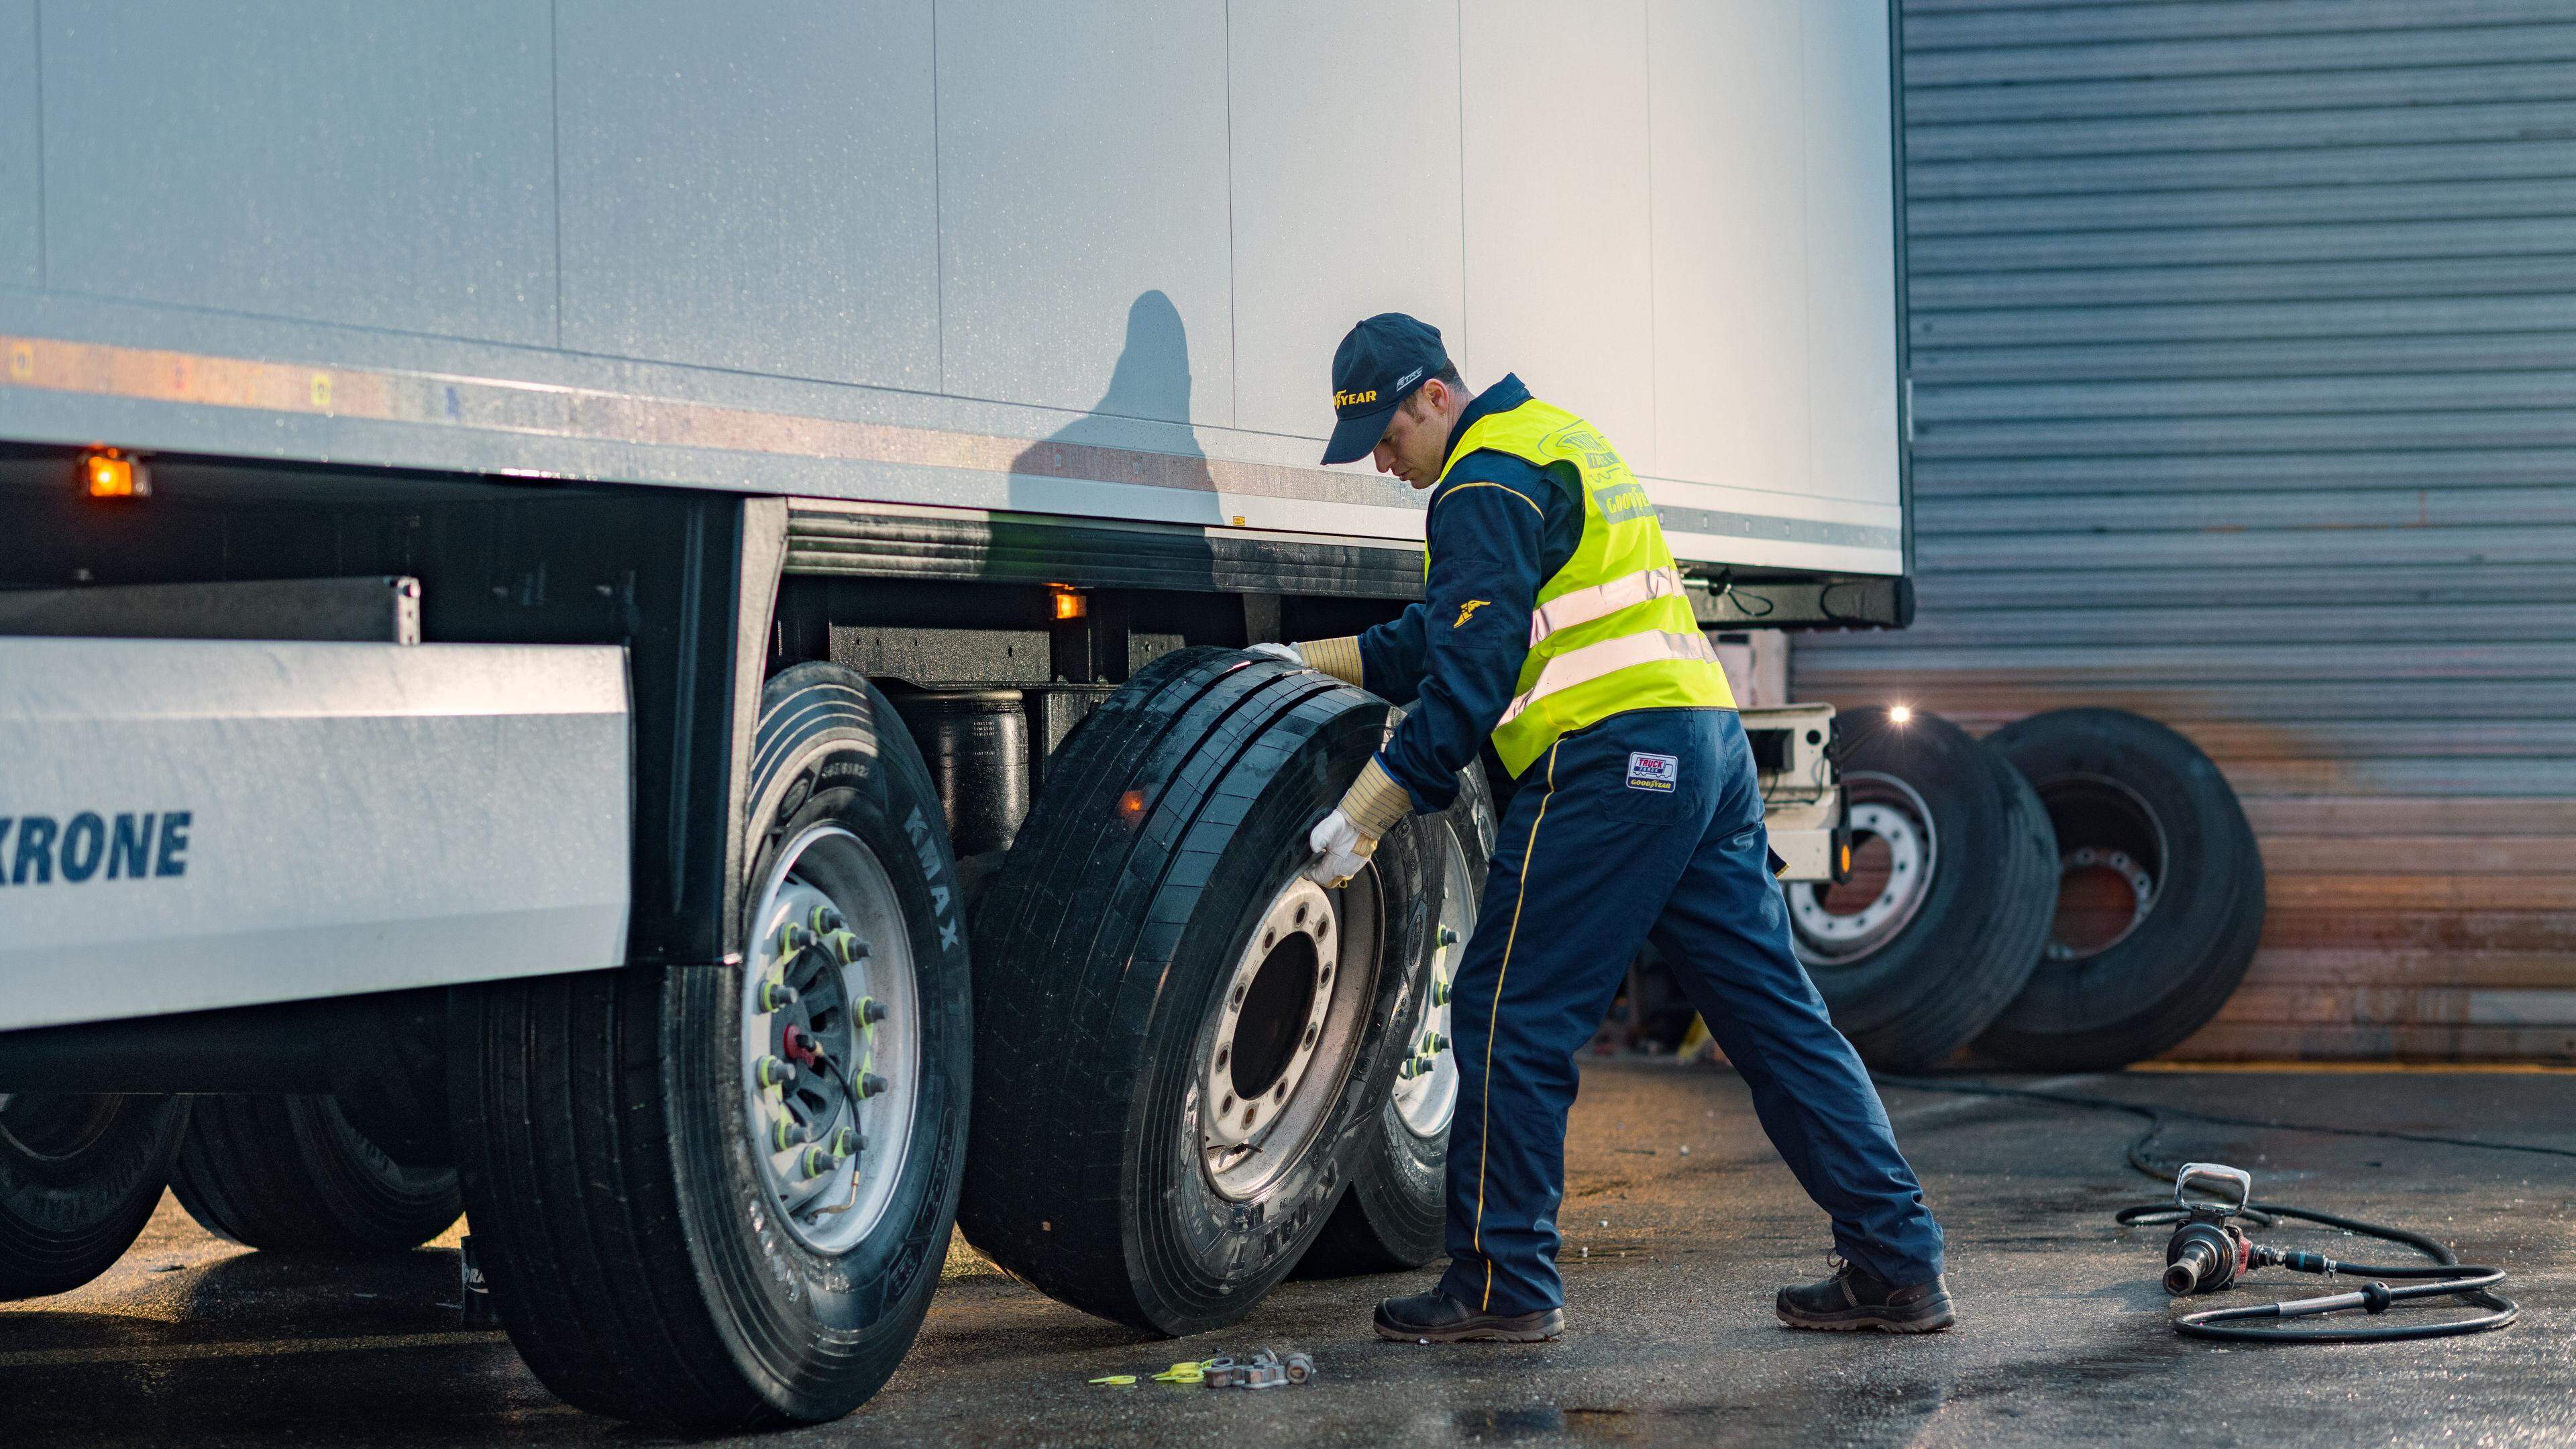 2014 kam es zu einer Reihe von tödlichen Unfällen nach geplatzten Reifen, die Goodyear in Luxemburg hergestellt hatte.